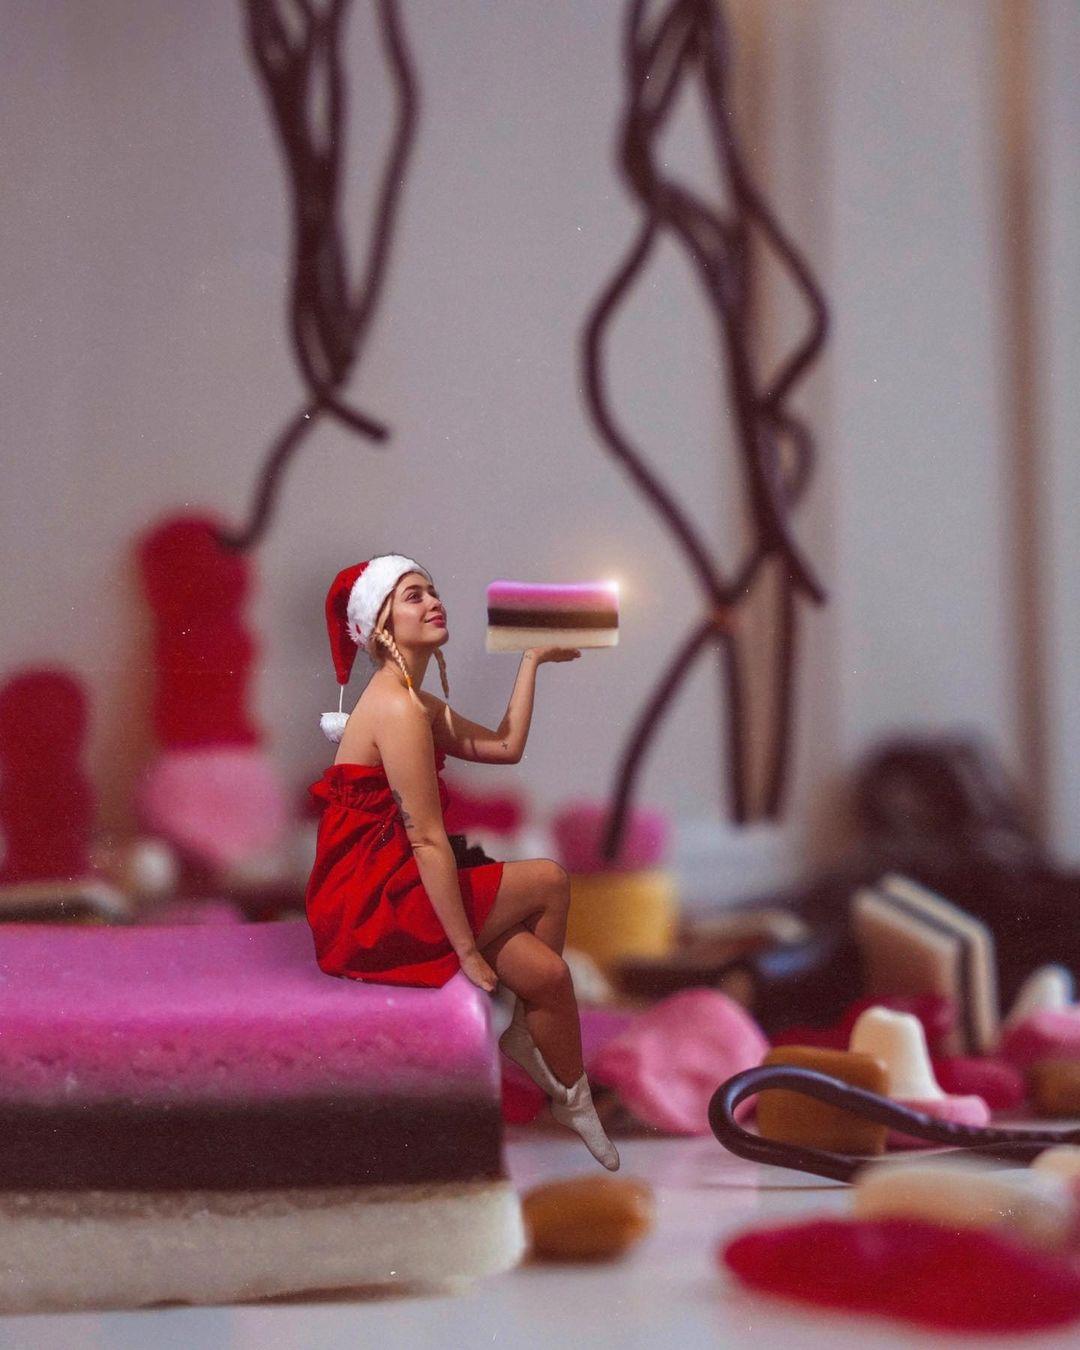 Kan i gætte hvilken julekalender det her billede er inspireret af? ♥️🍬 #christmas #christmasinsta #christmascalender #candy